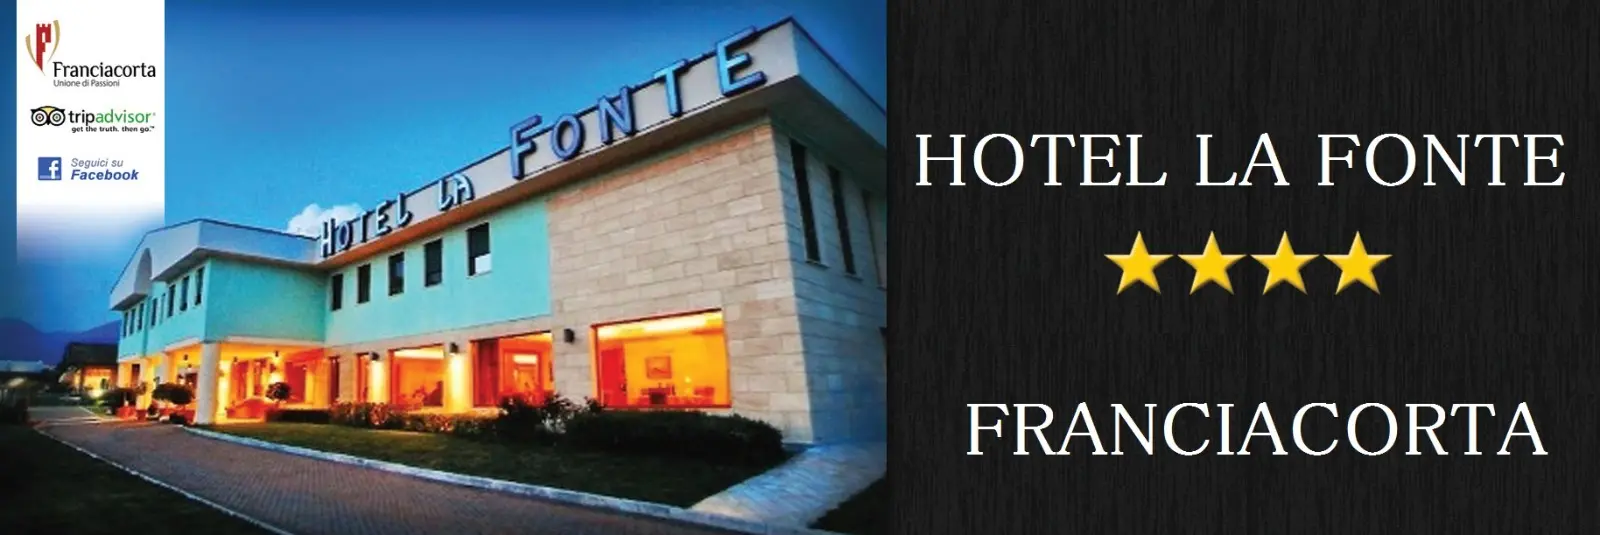 Hotel La Fonte: Un’oasi di Comfort e Raffinatezza in Franciacorta